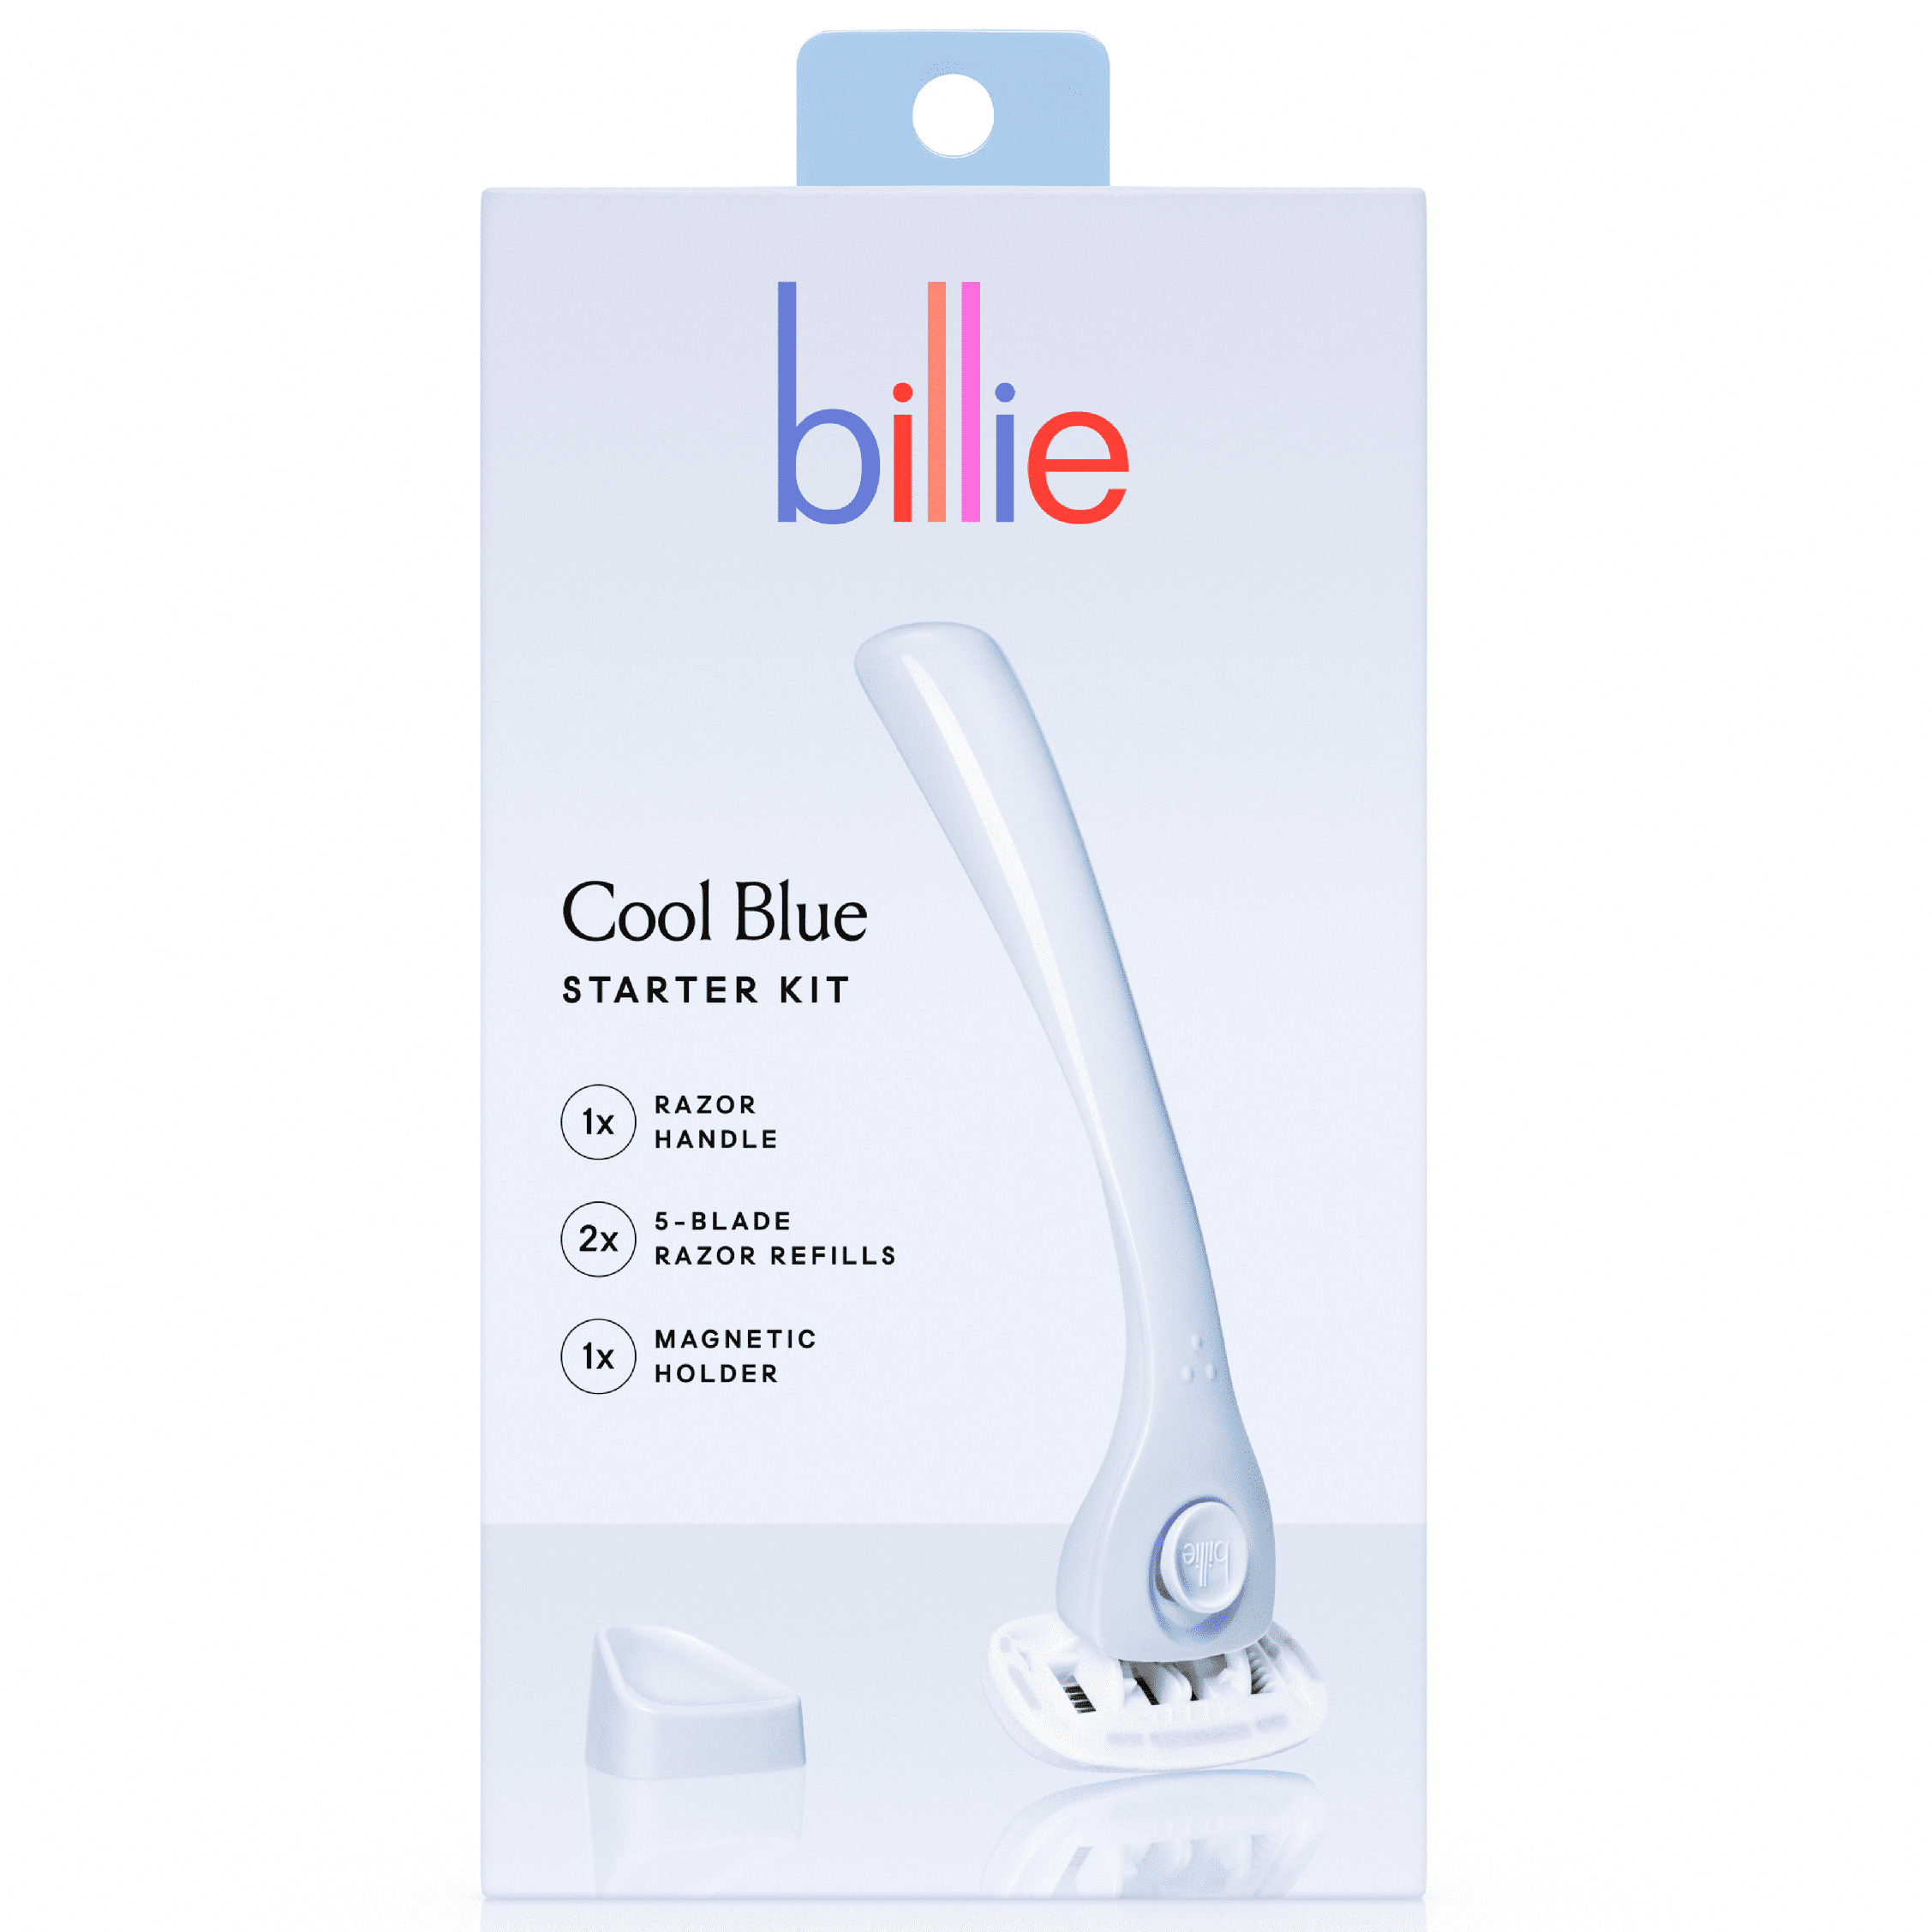 Billie Women’s Razor Kit - 1 Handle + 2 Blade Refills + Magnetic Holder - Cool Blue